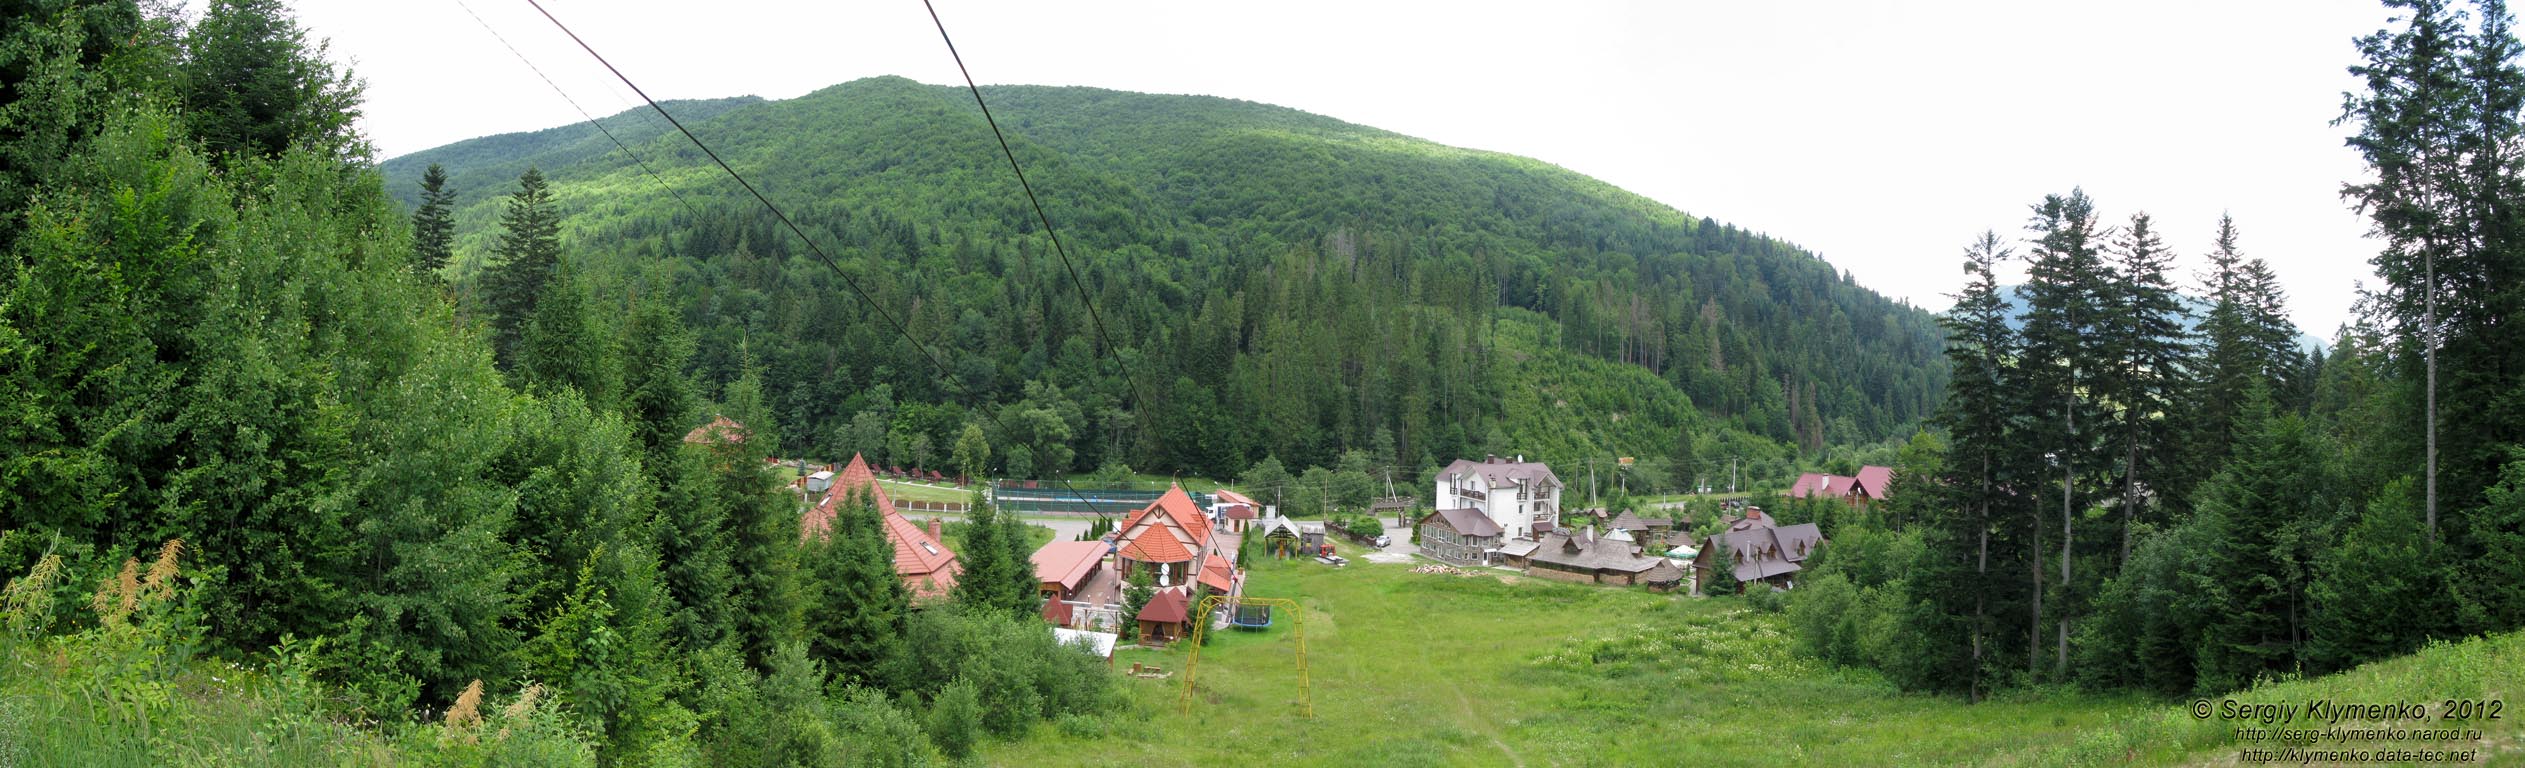 Закарпатская область, Ждениево. Фото. Вид сверху на гостиничные комплексы, расположенные на западной окраине посёлка.